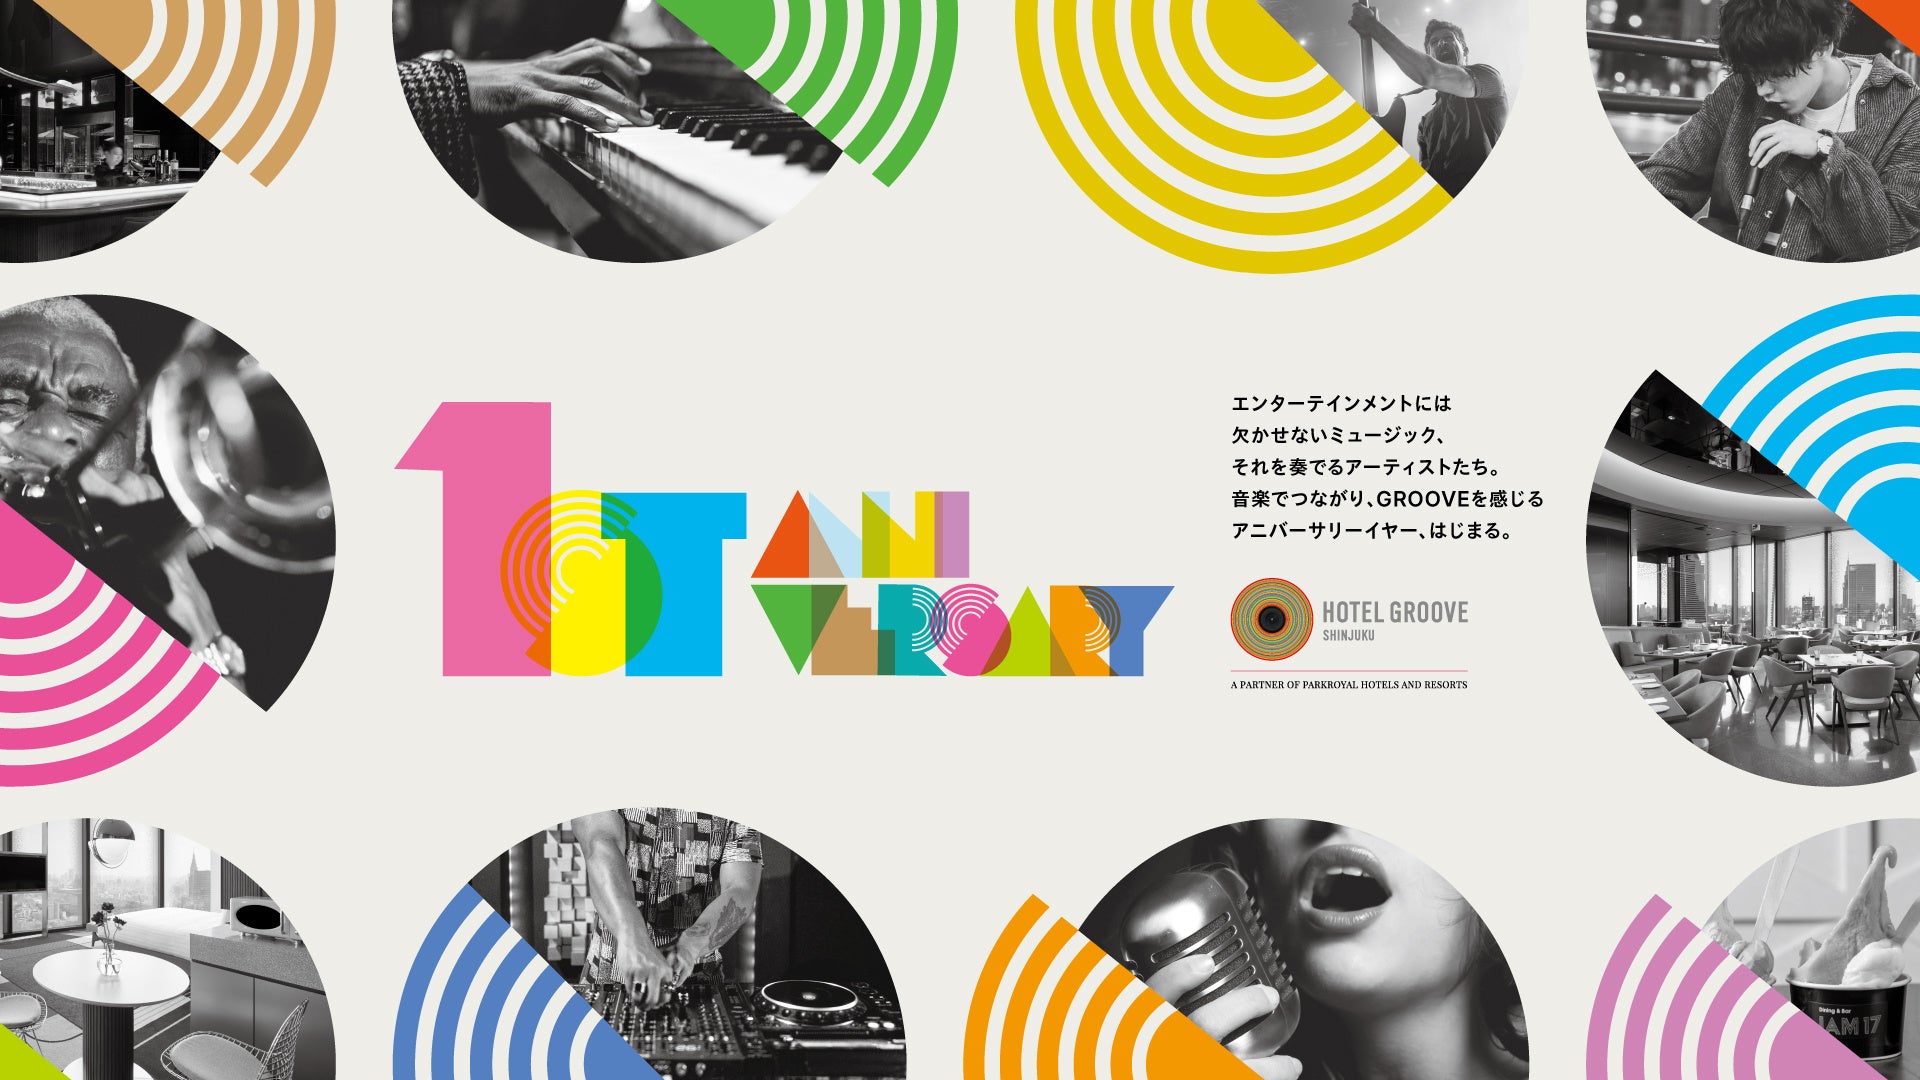 開業1周年を祝い、東京のミュージックシーンと繋がる祭典「HOTEL GROOVE SHINJUKU Music Anniversary Party」